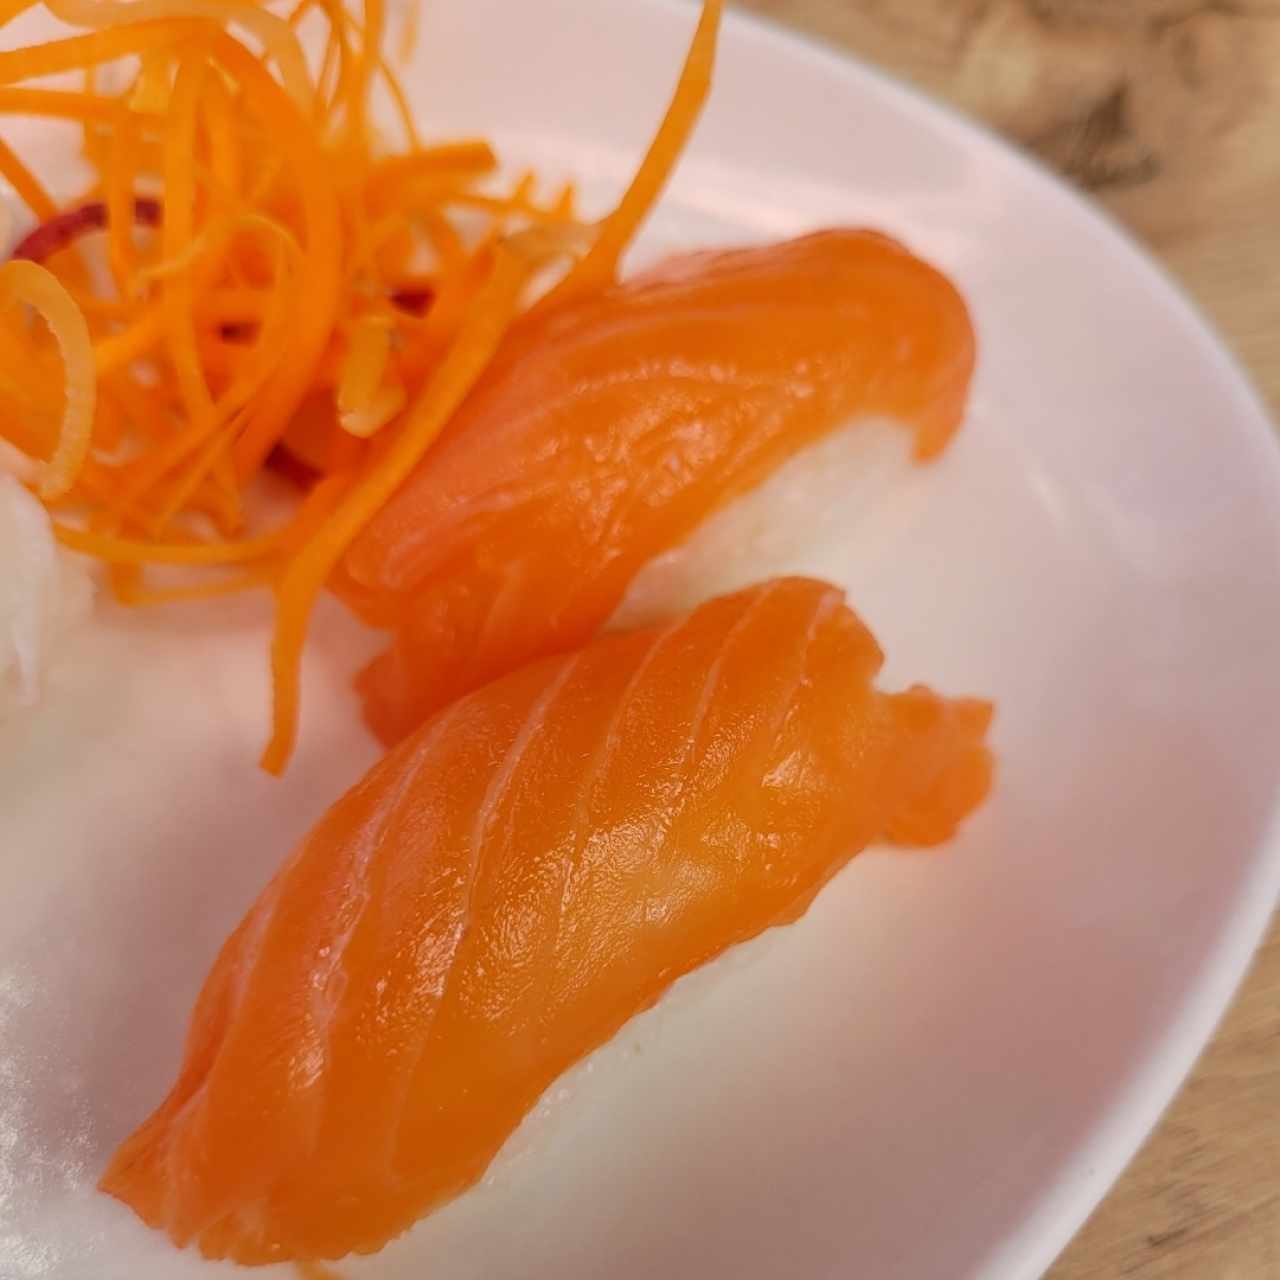 Nigiri sushi - Sake salmón 